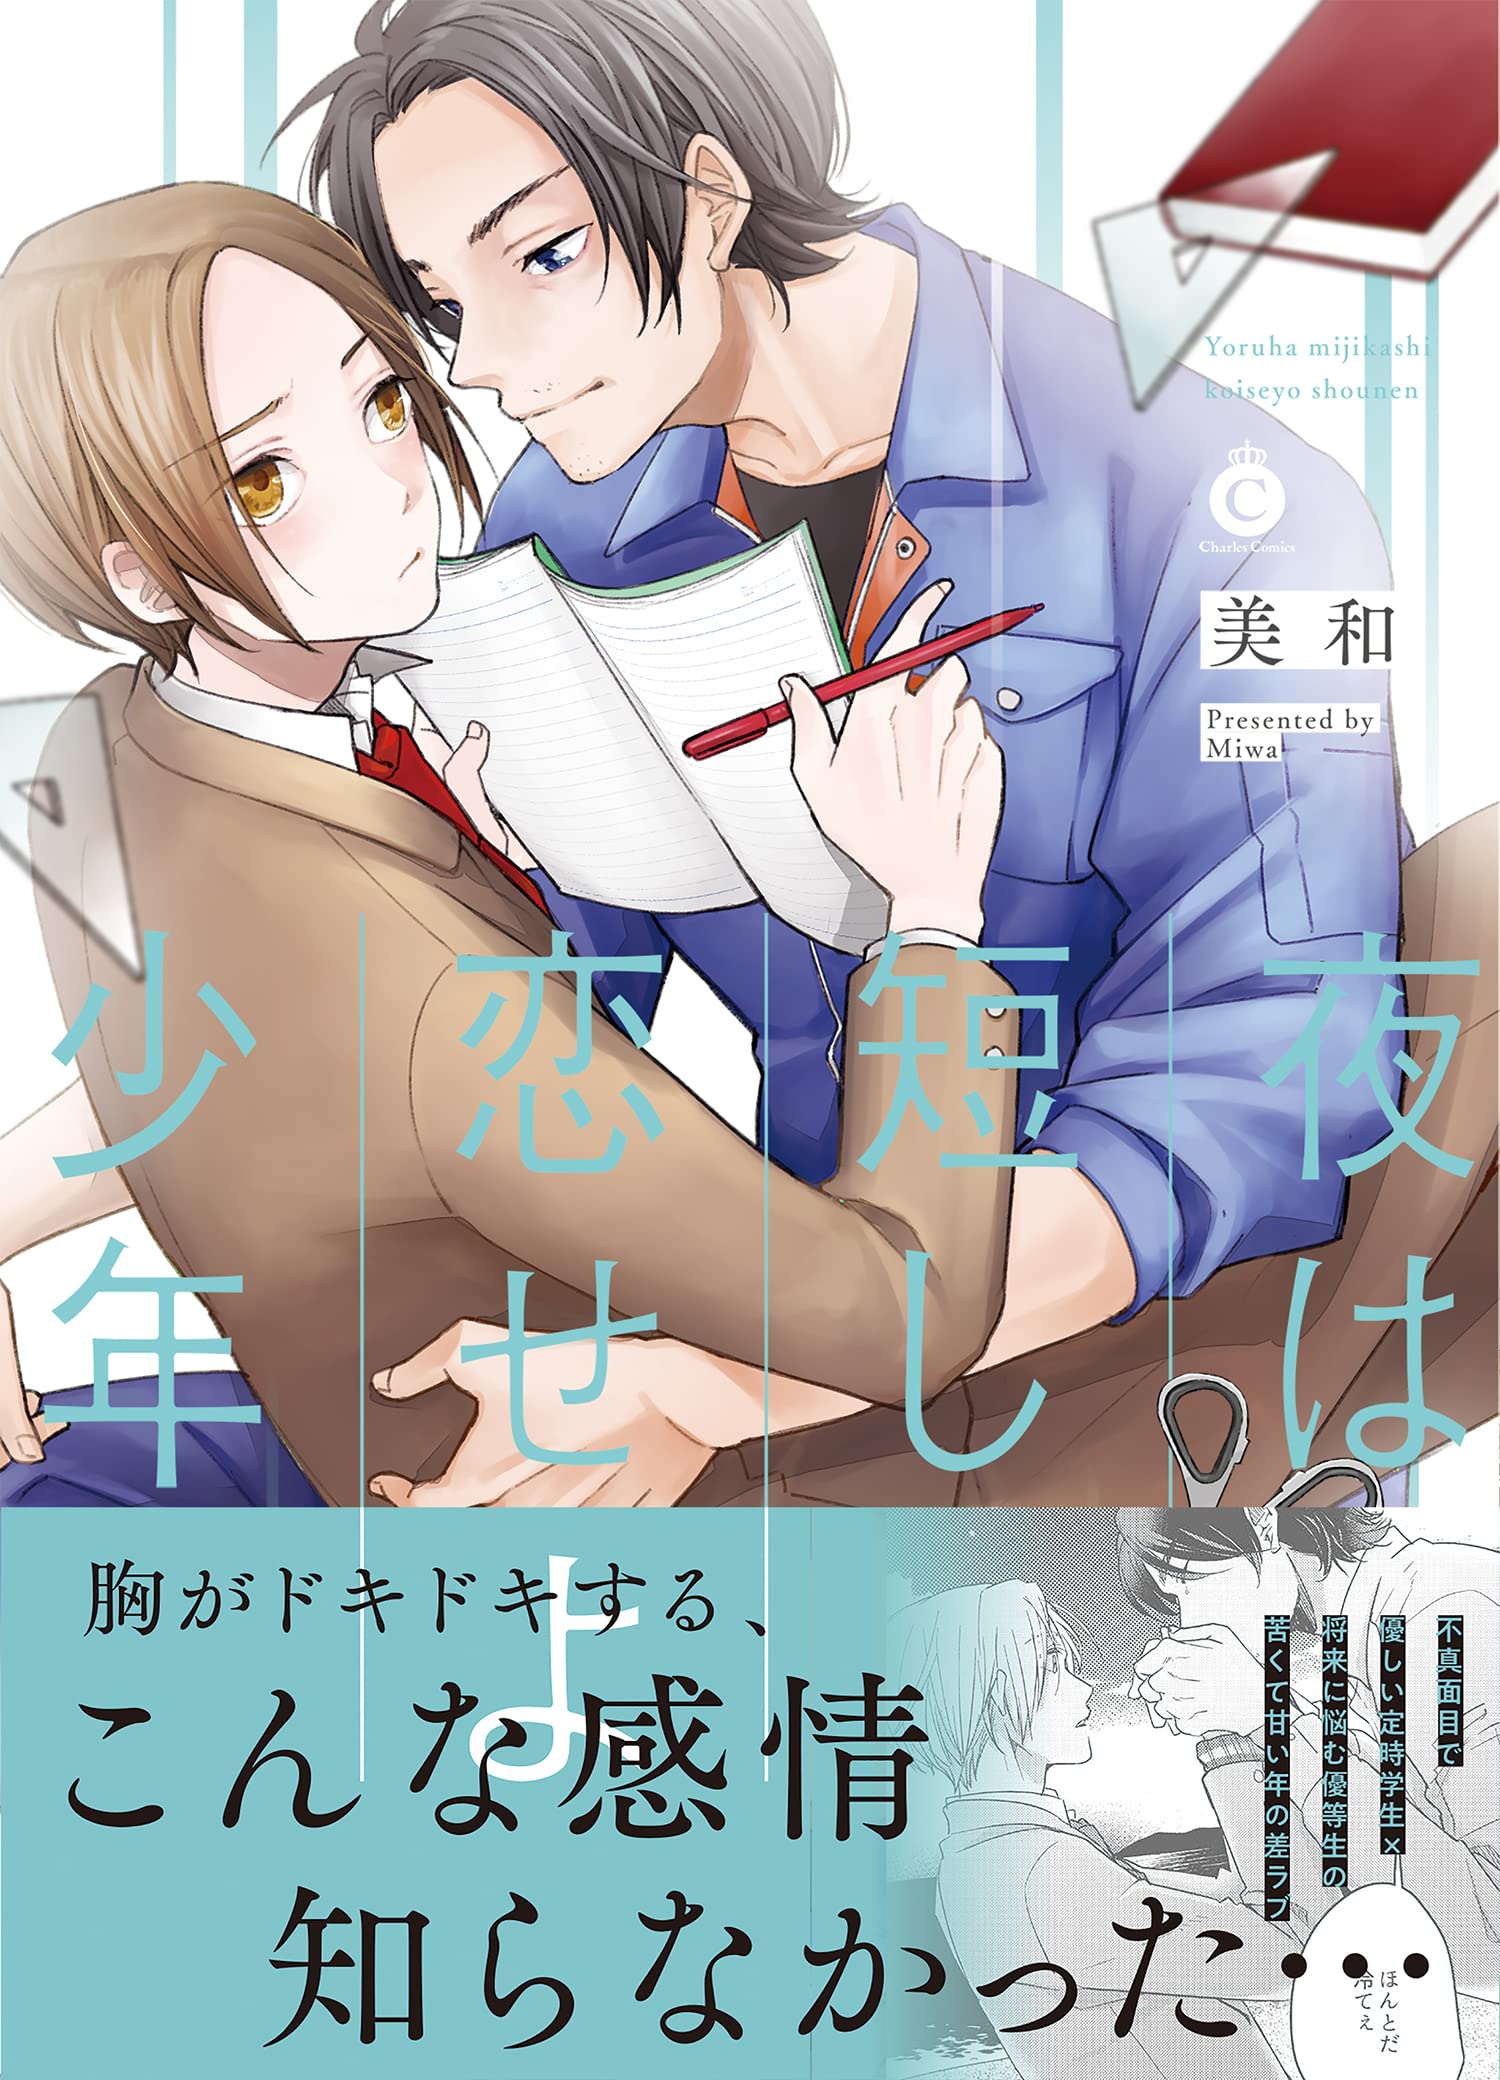 Boys Love (Yaoi) Comics - Yoru wa Mijikashi Koiseyo Shounen (夜は短し、恋せよ少年 (Charles Comics)) / Miwa